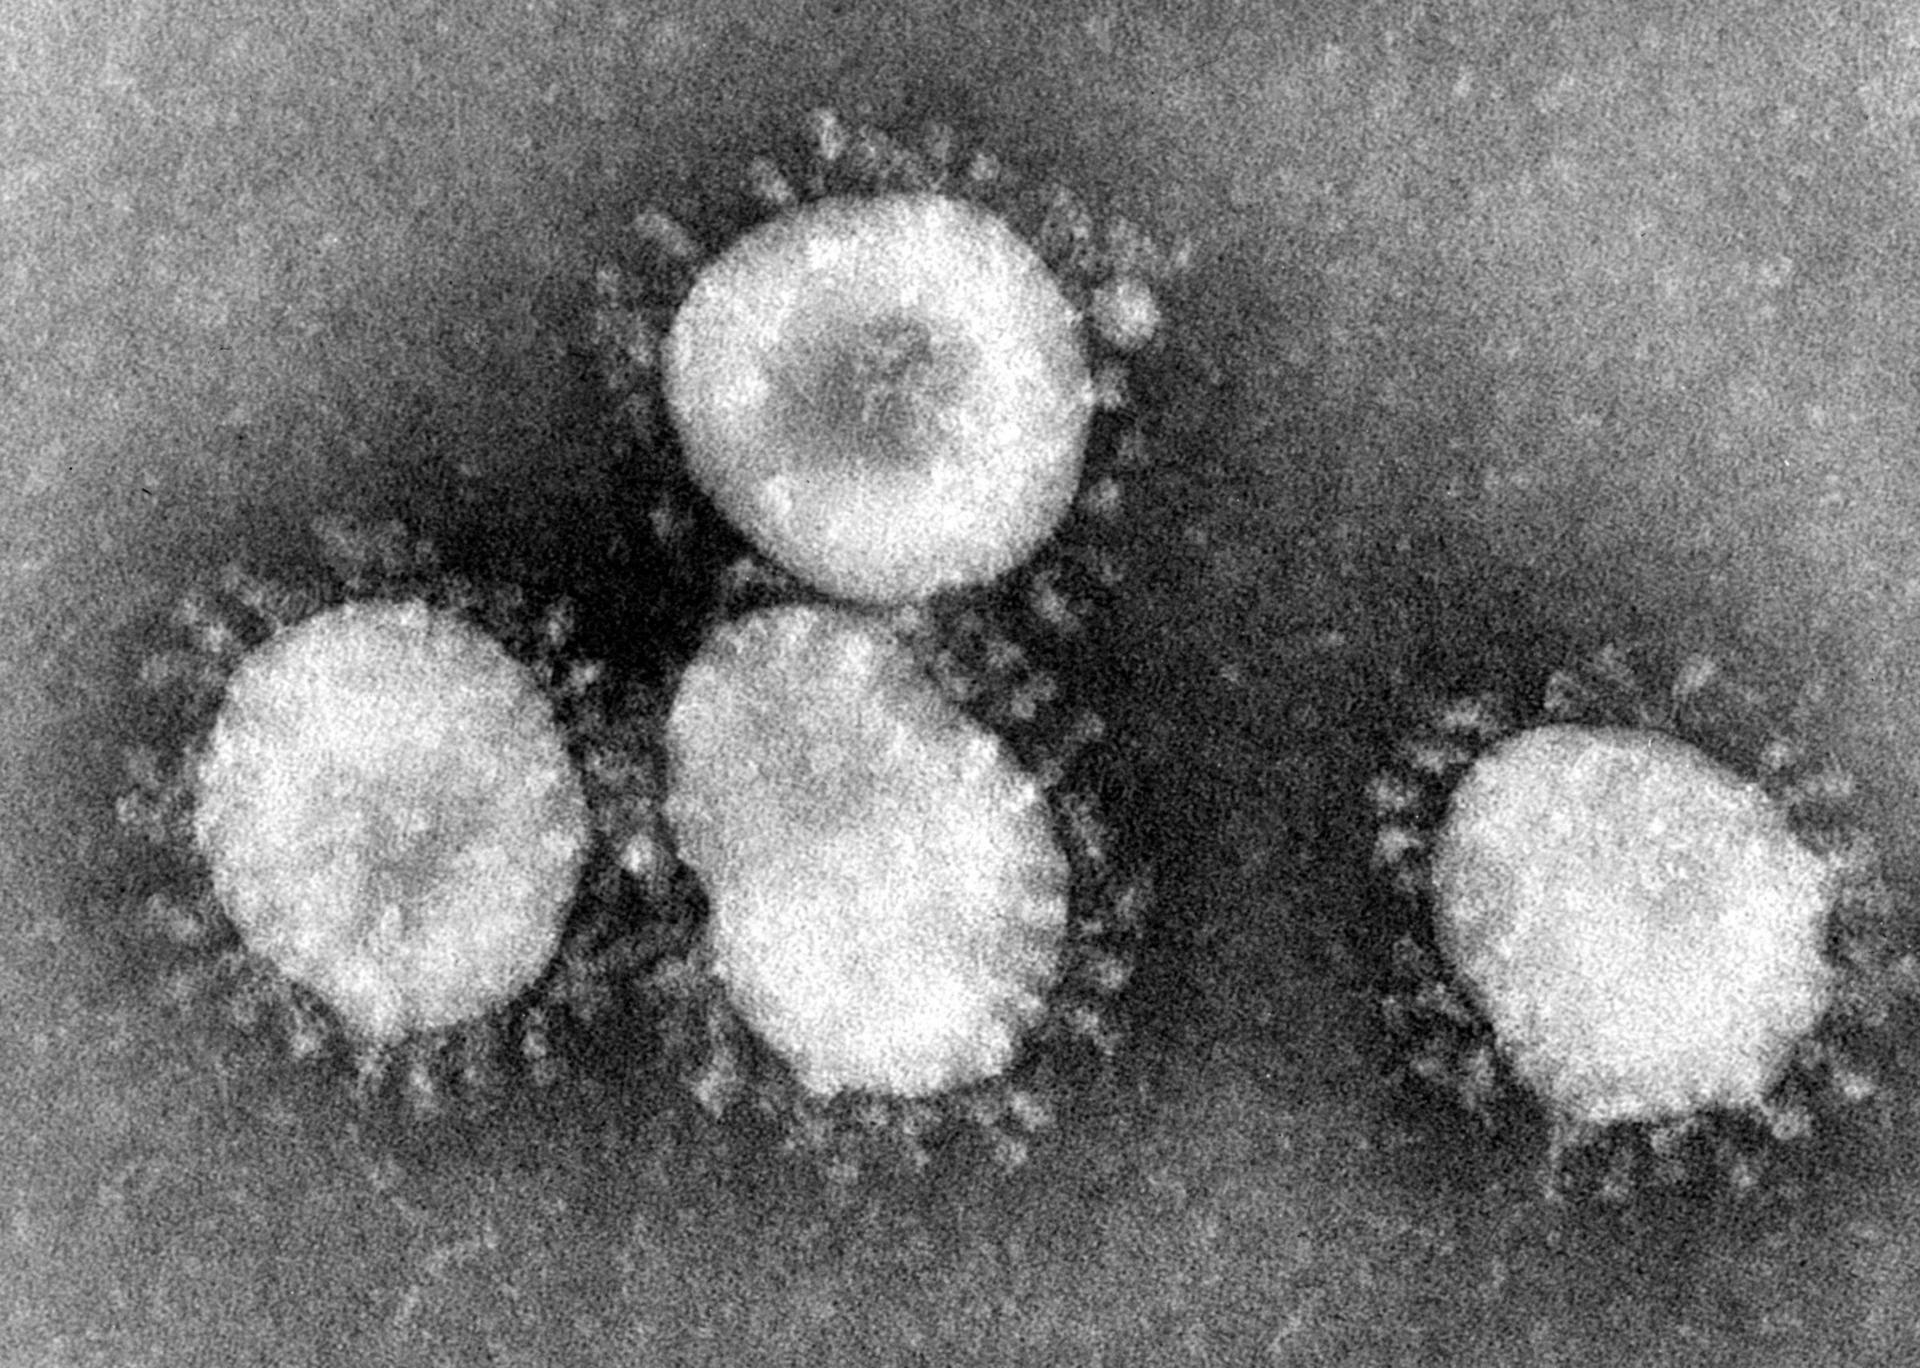 มนุษย์อาจเป็นพาหะไวรัสโคโรนา แพร่เชื้อสู่คนอื่นได้โดยไม่ต้องแสดงอาการใด ๆ ทั้งสิ้น